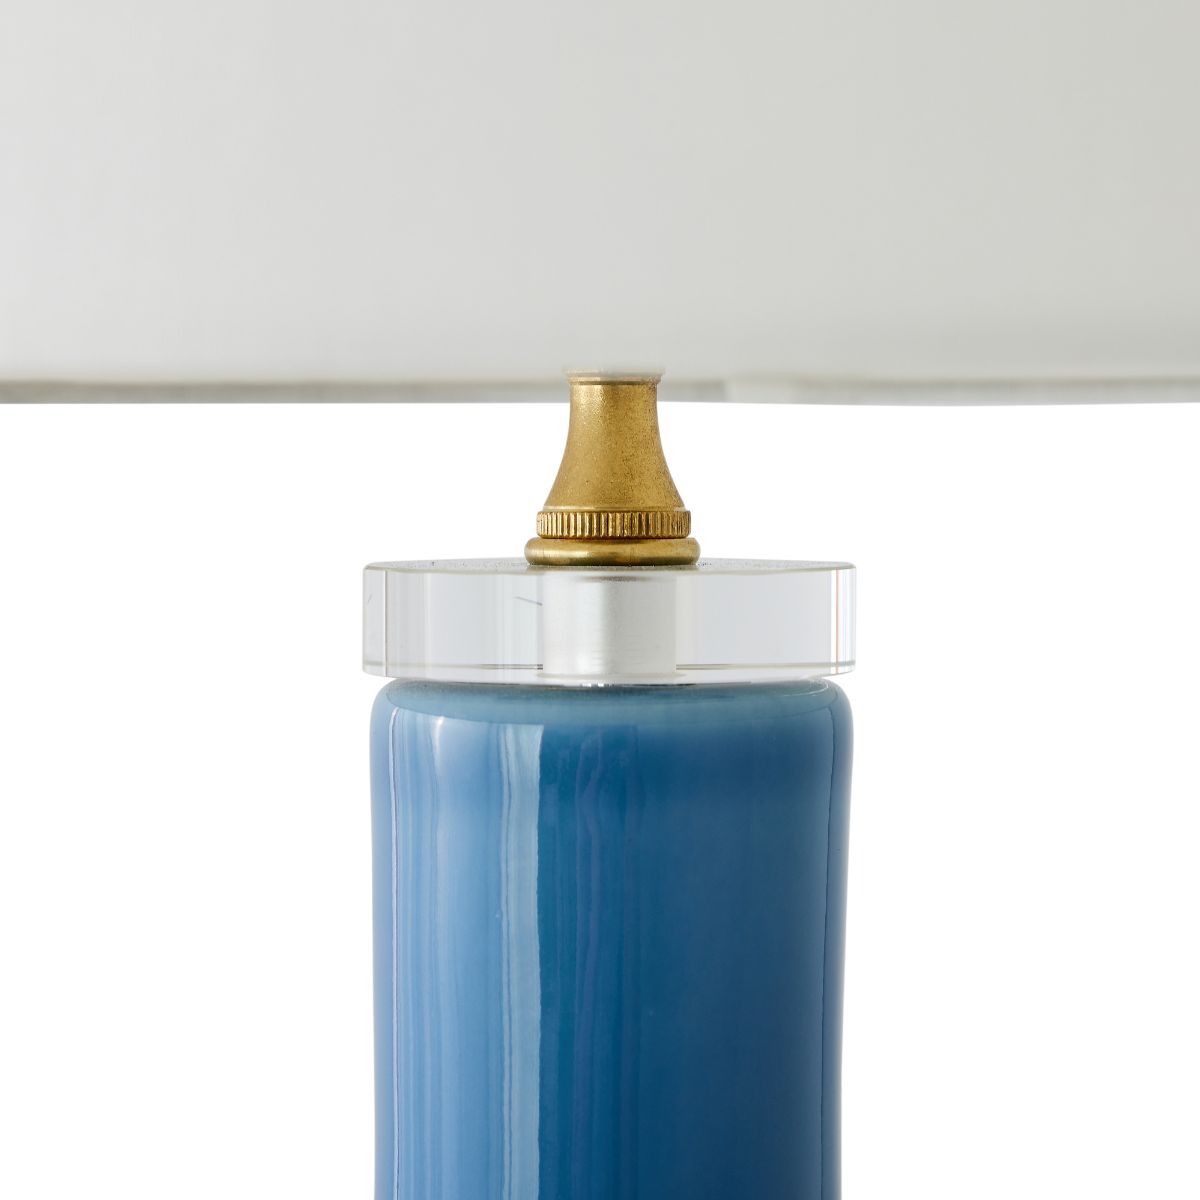 Daisy Lamp in Blue Bonnet - Caitlin Wilson Design